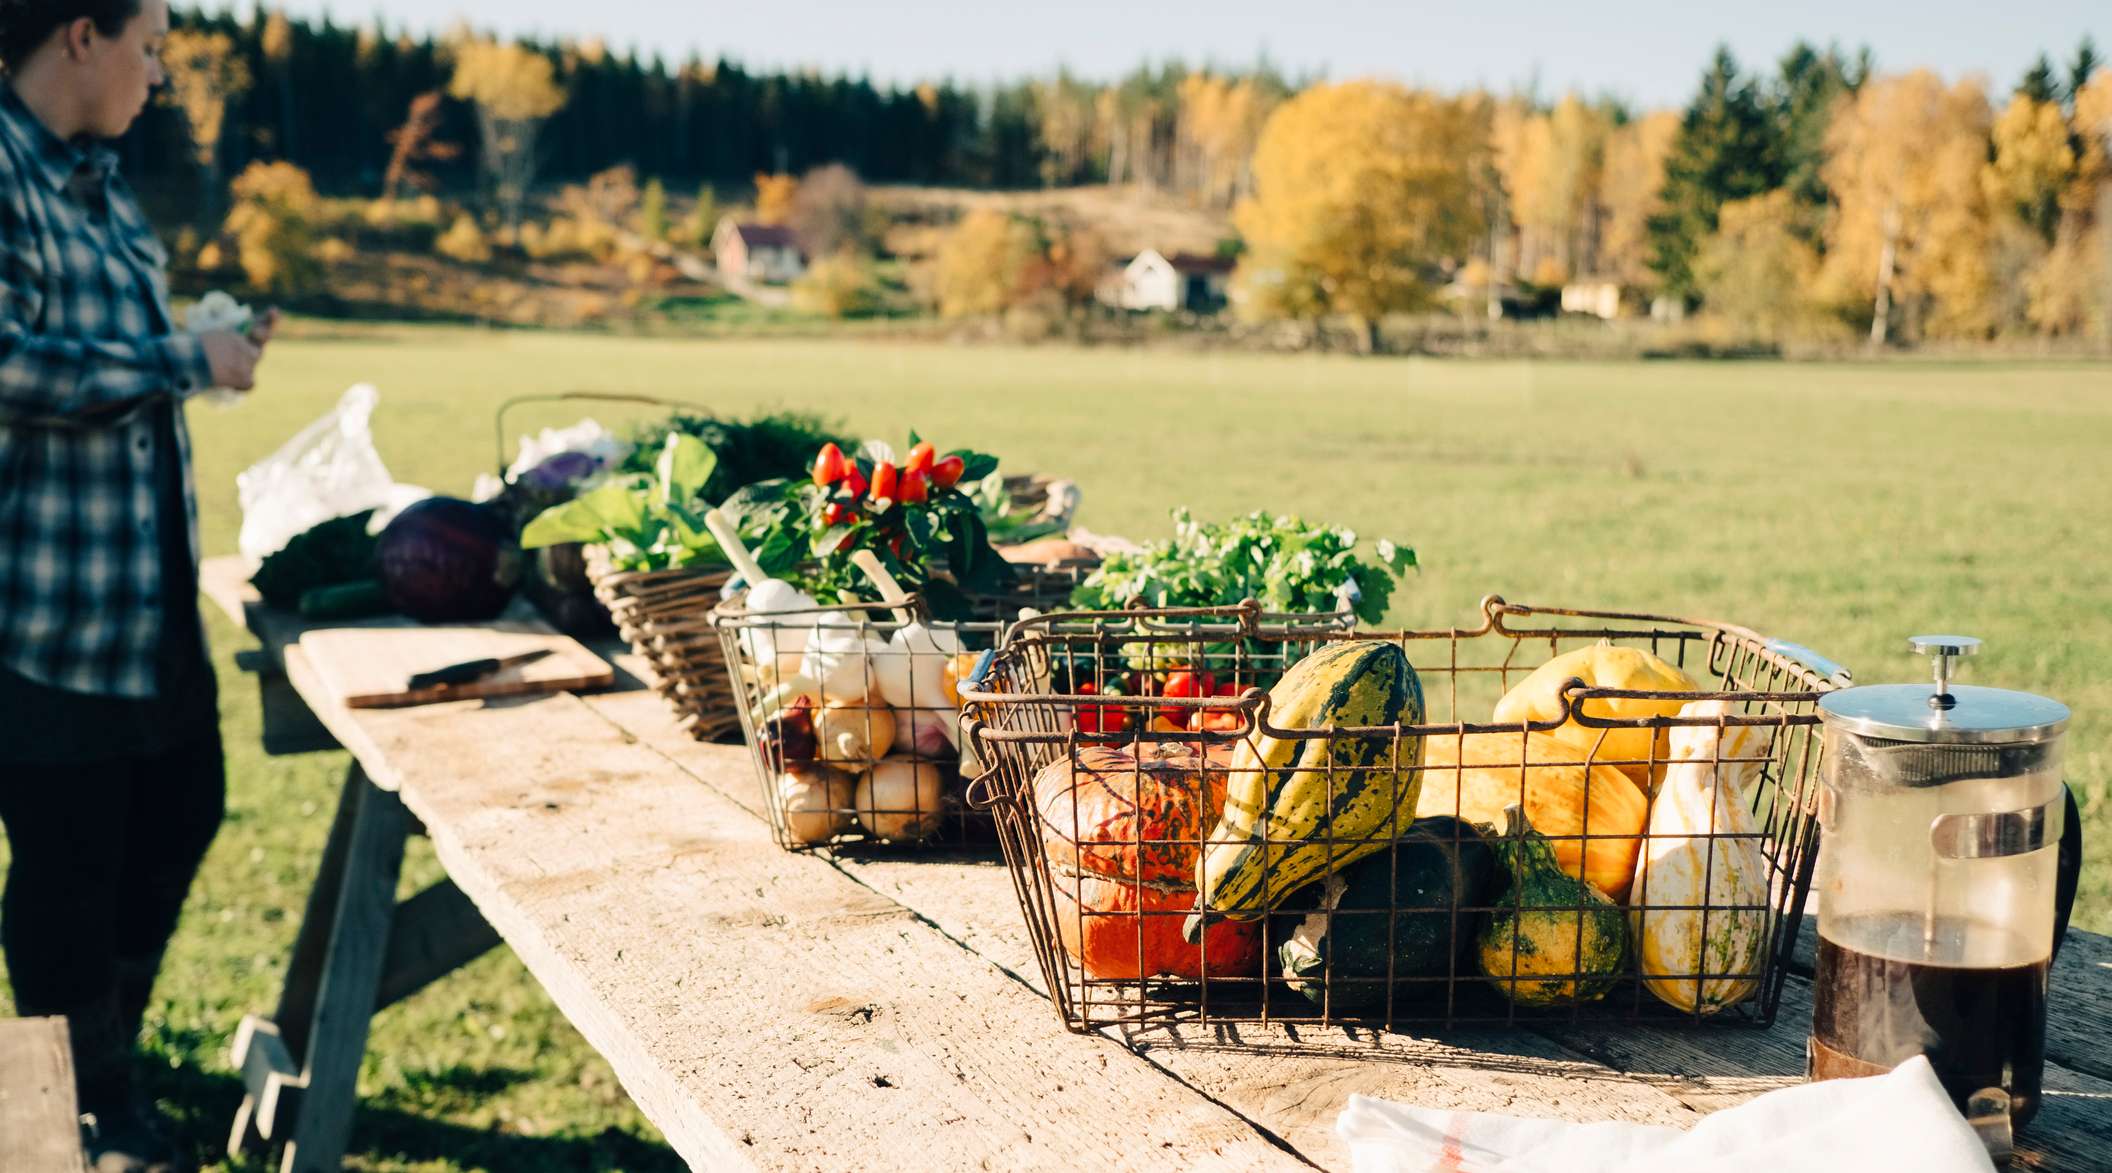 Allianz - Landwirtschaftliche Betriebshaftversicherung: Hofverkauf mit Gemüsestand auf einem Feld